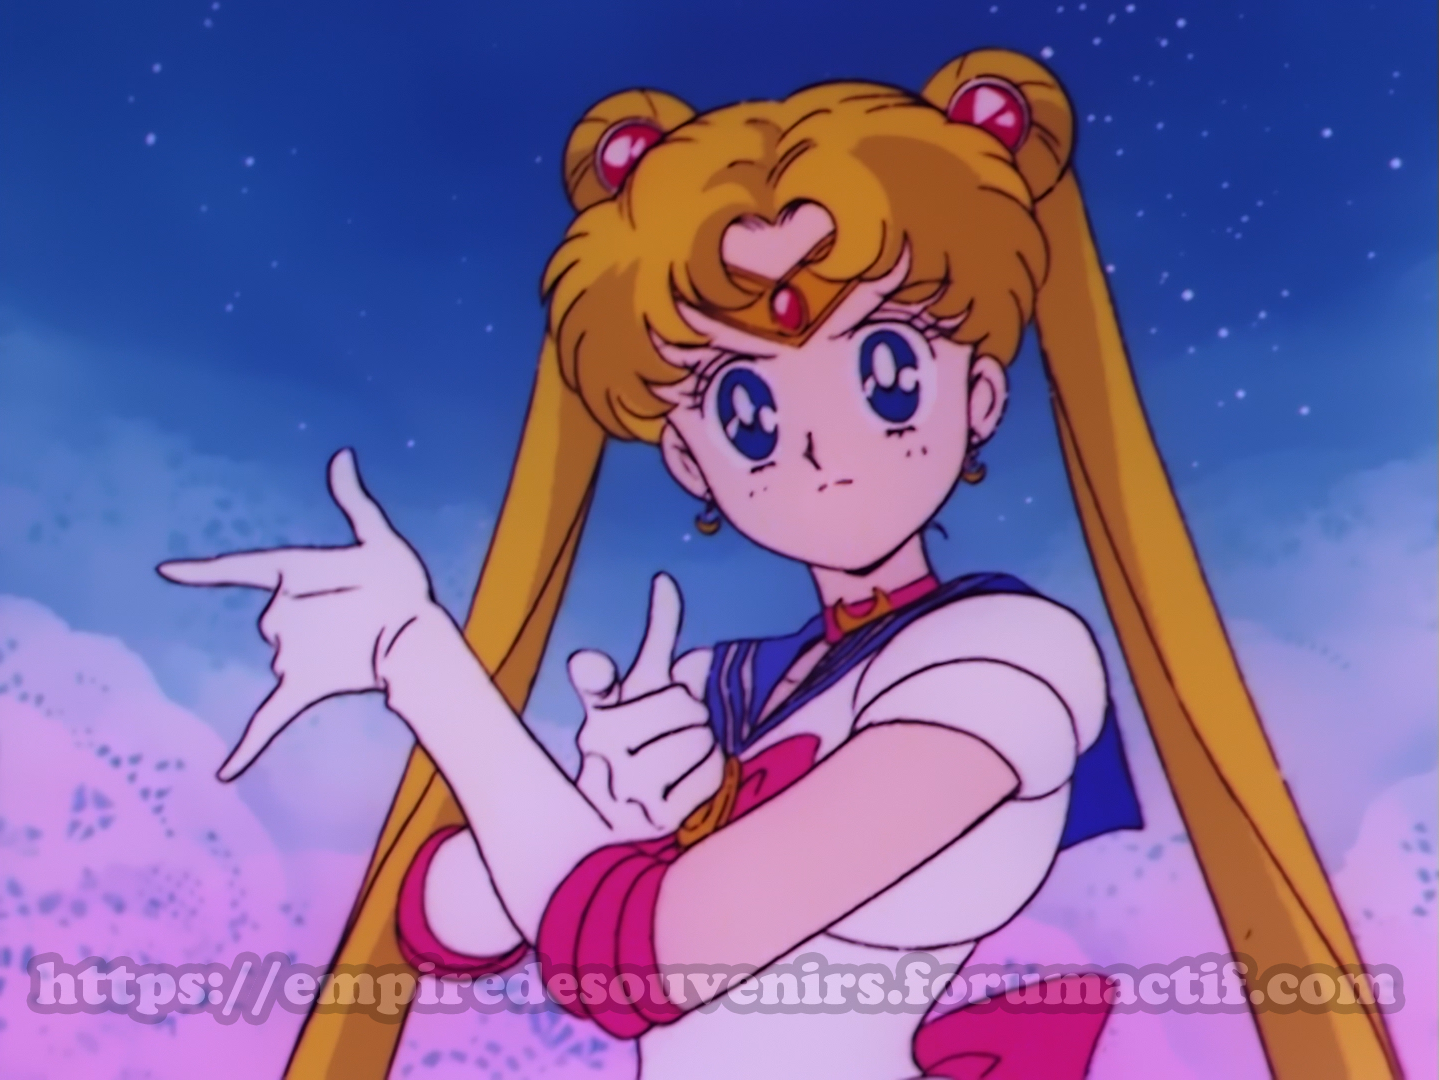 [Dossier] Les censures dans Sailor Moon 7hl5